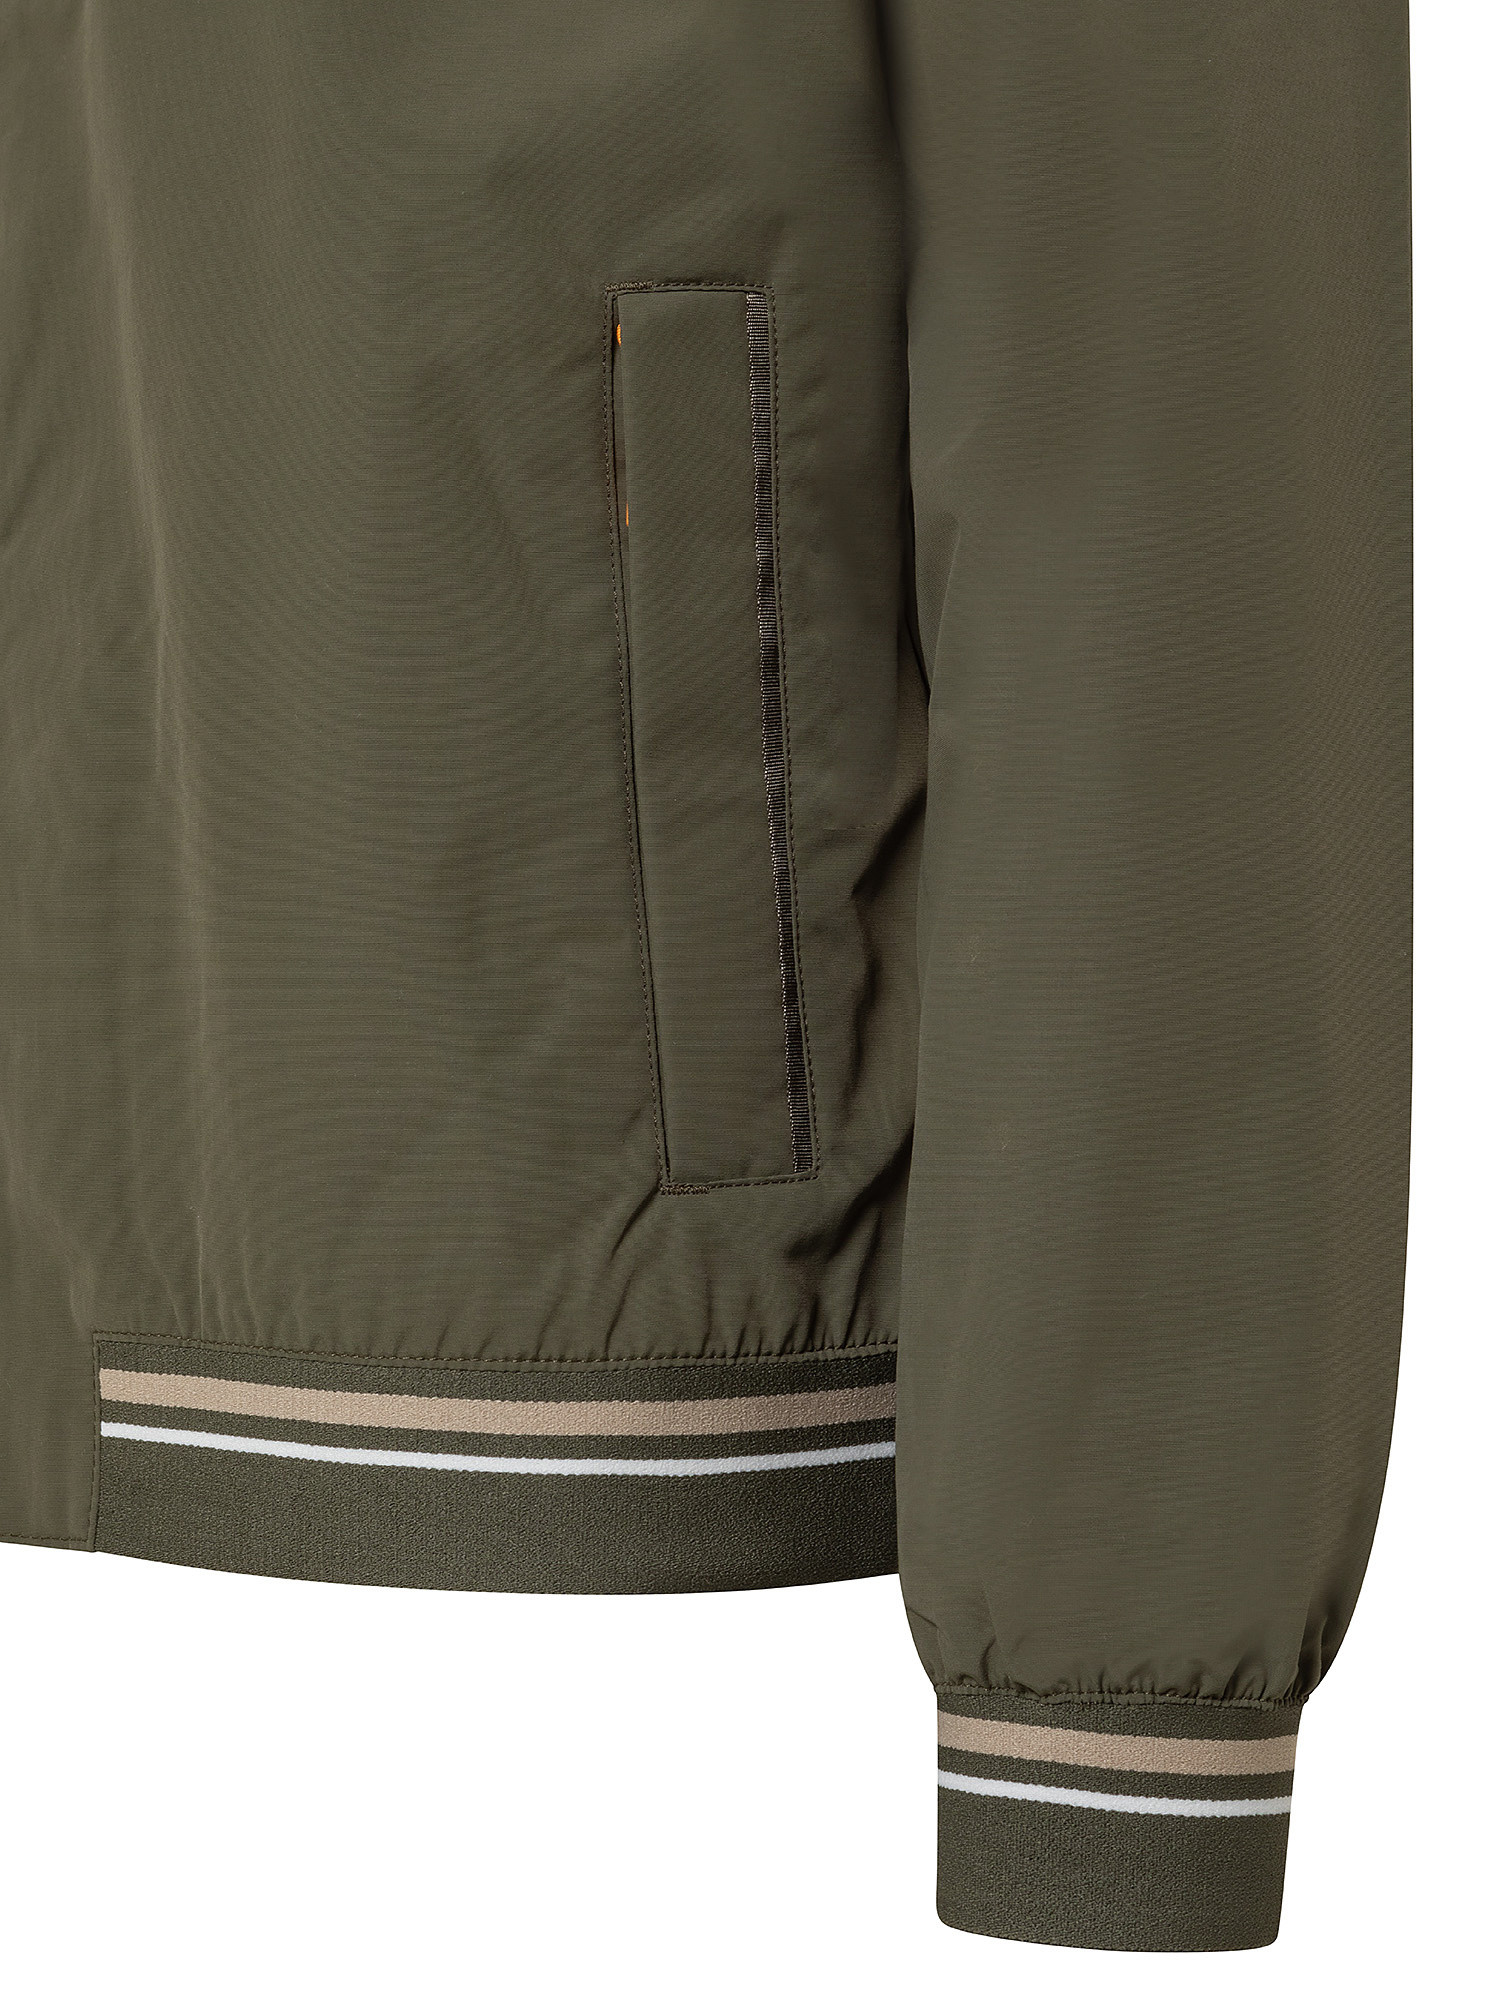 Coastal Cool Hooded Men's Bomber Jacket, Green, large image number 2